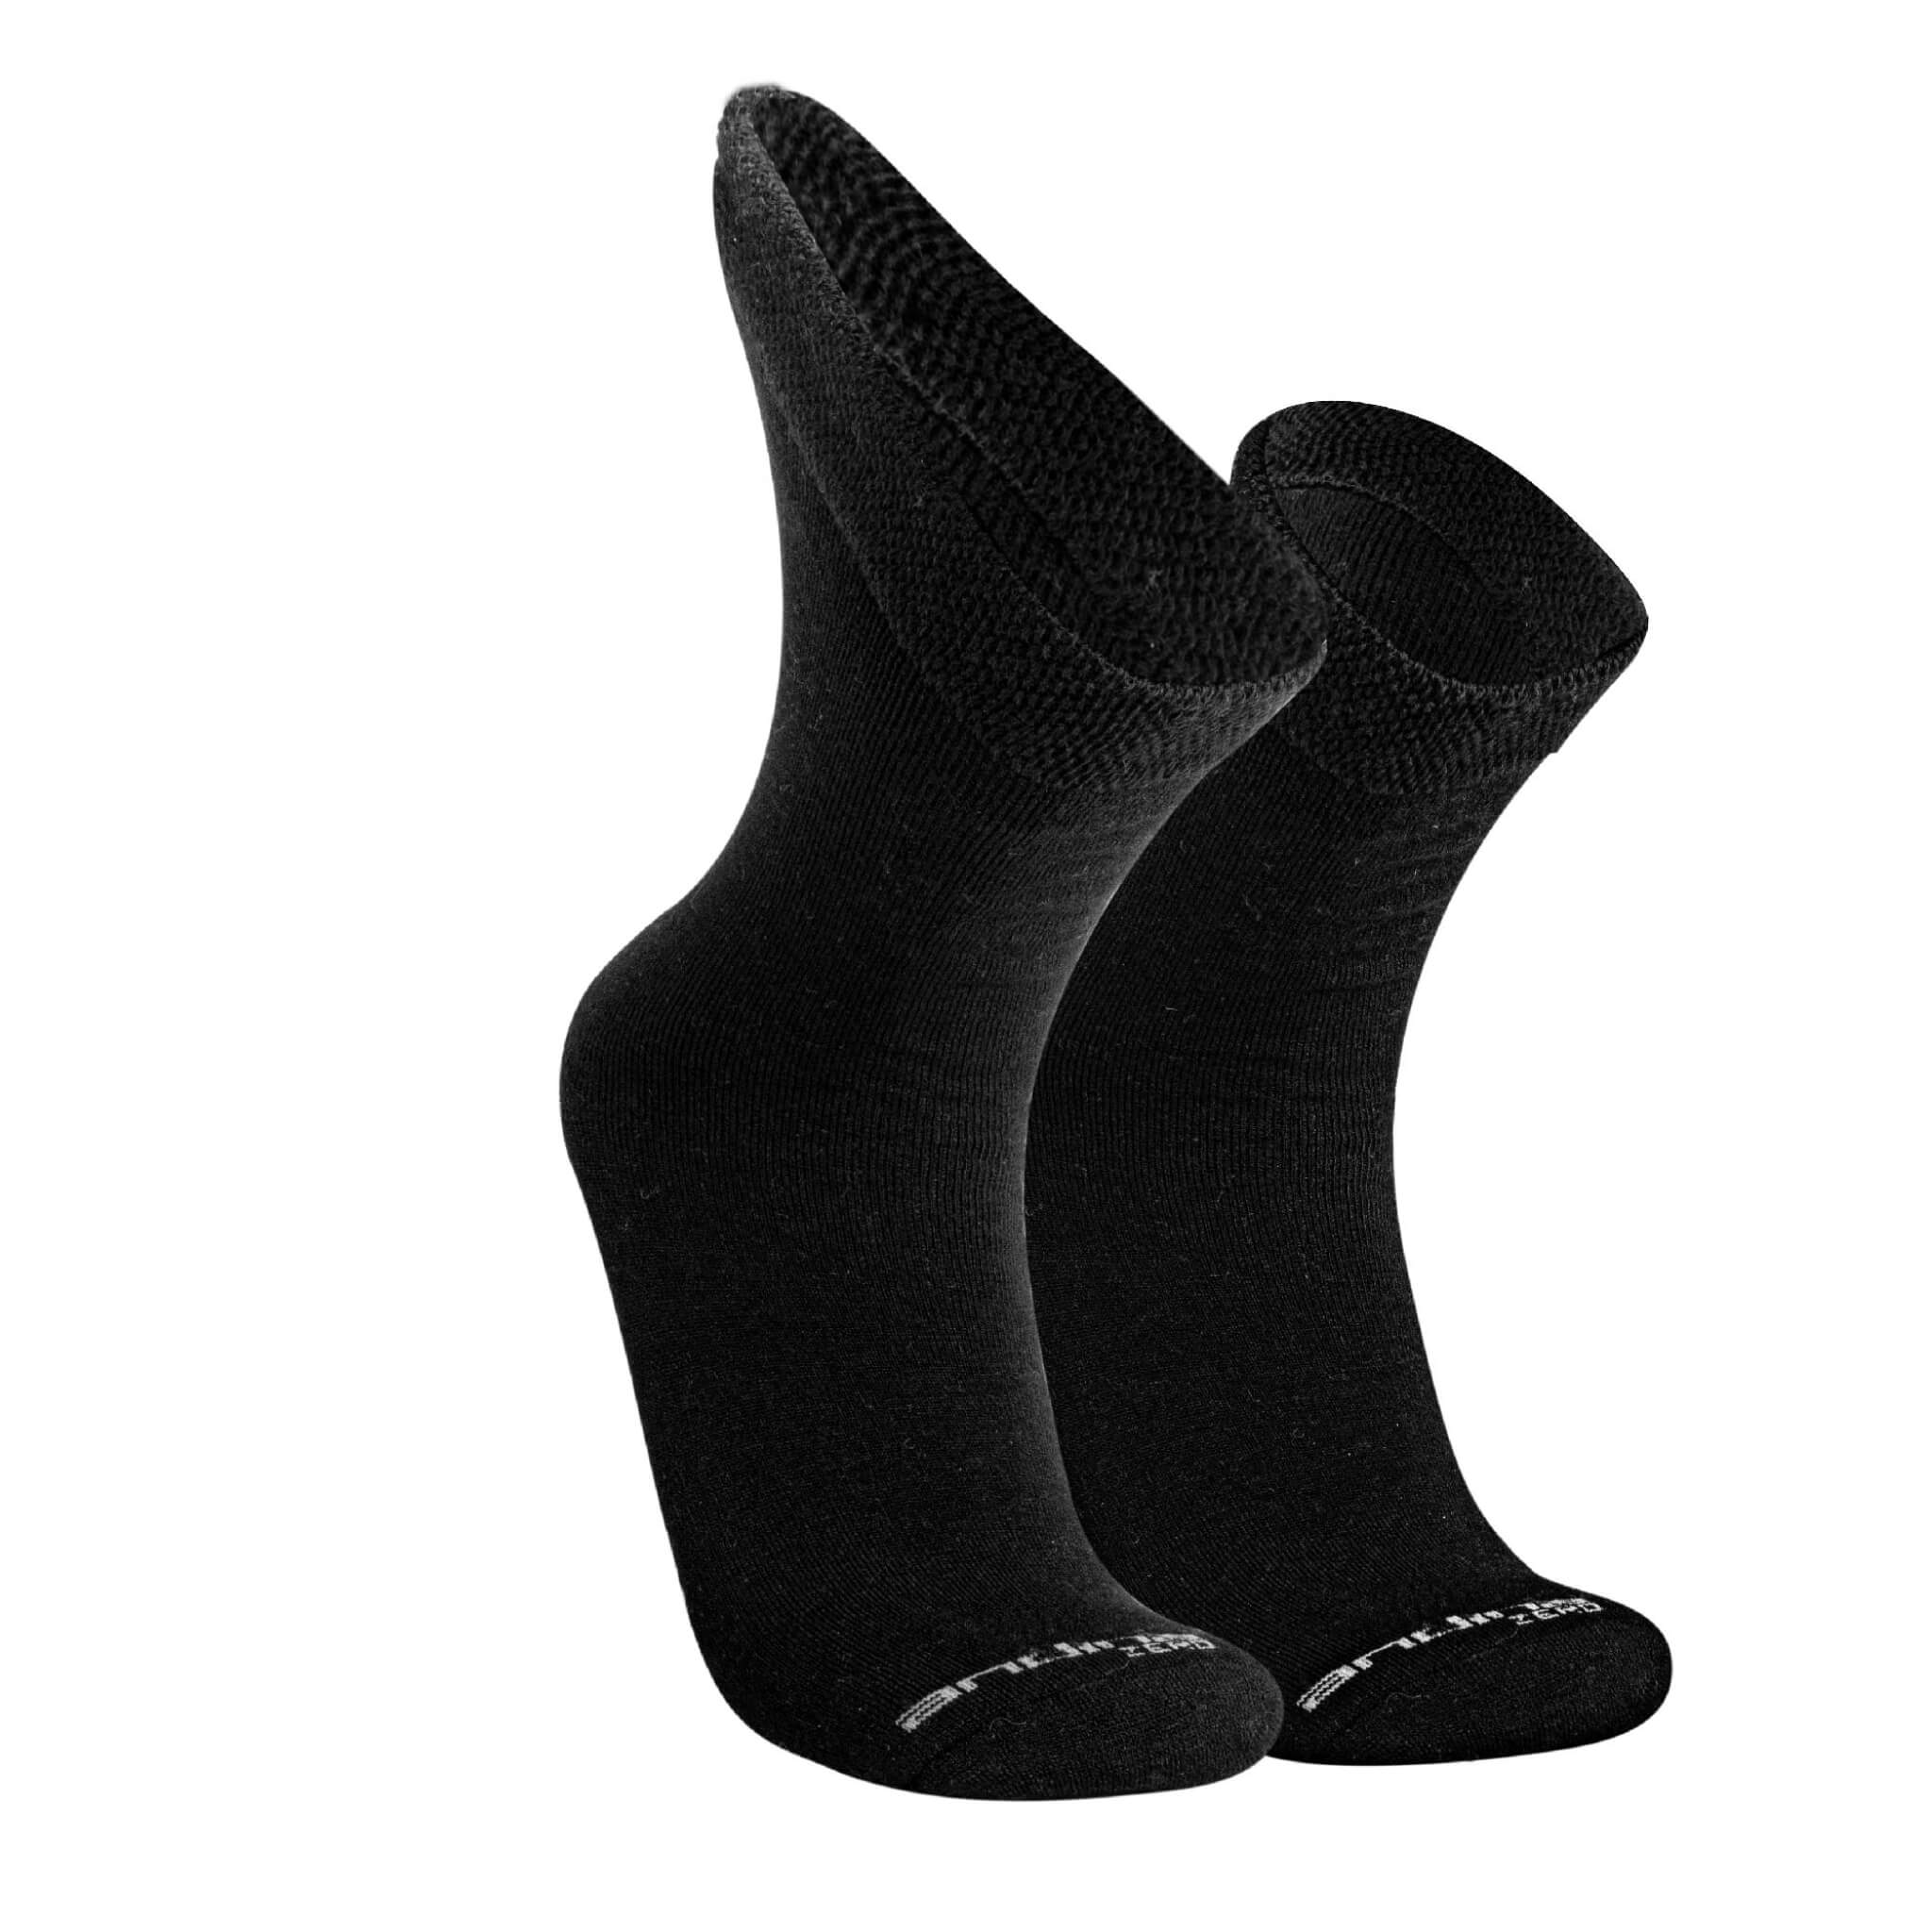 Diabetiker Socken für Damen und Herren aus Alpaka und Tencel von Alpakin in schwarz